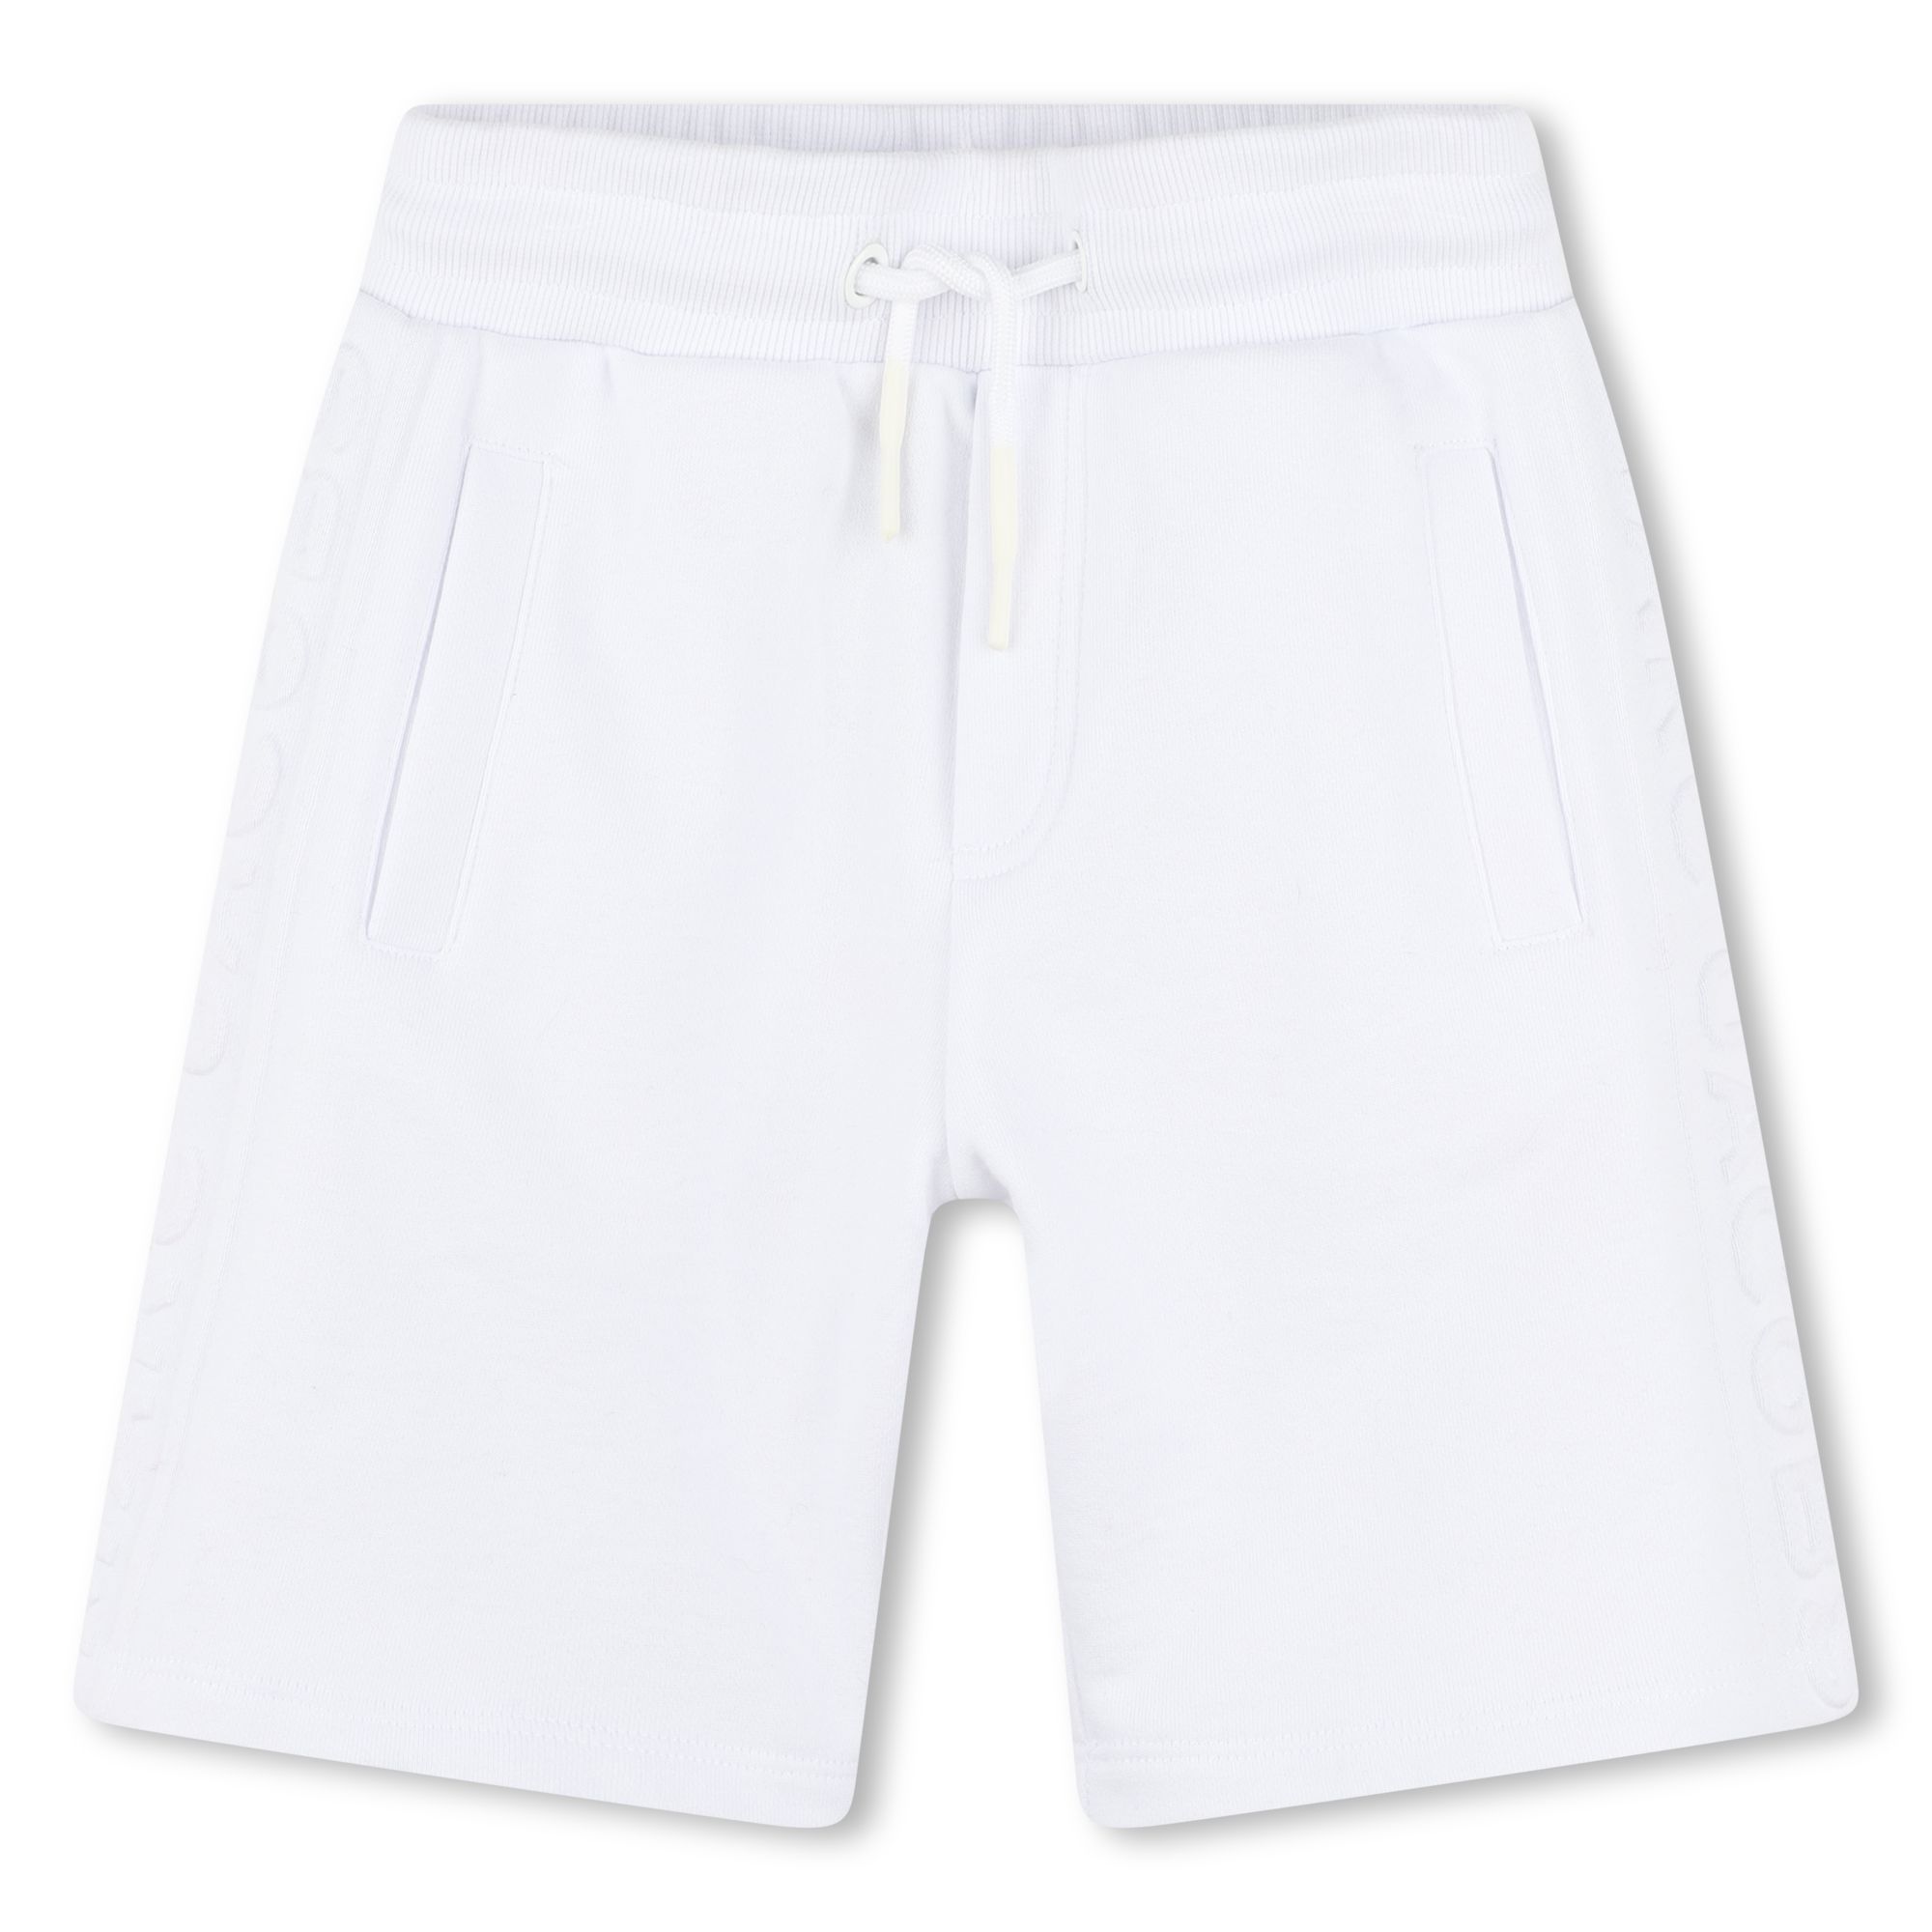 Bermuda-Shorts MARC JACOBS Für UNISEX